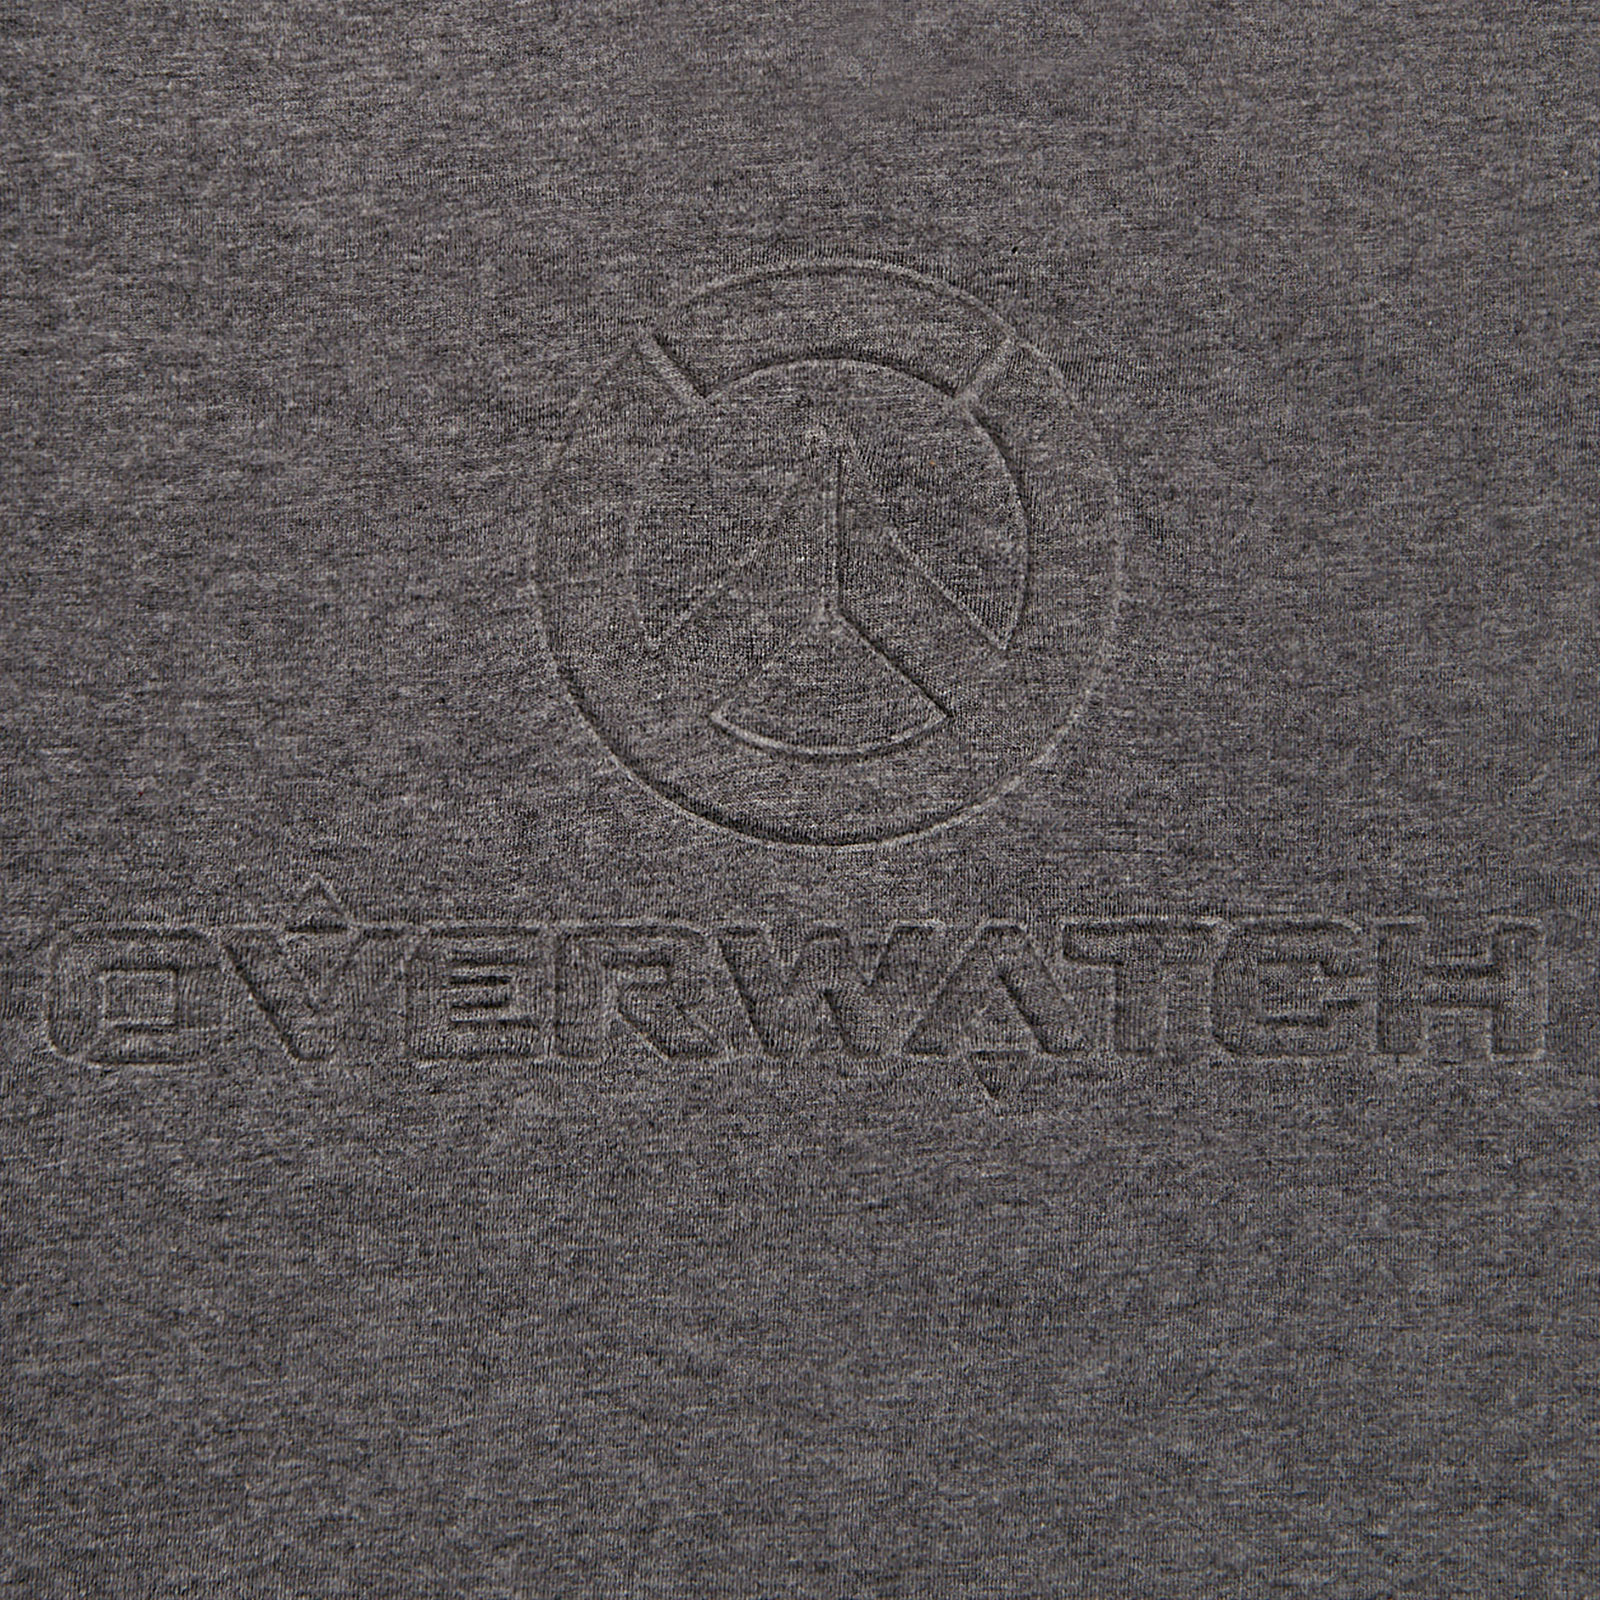 Overwatch - 3D Logo T-Shirt grey